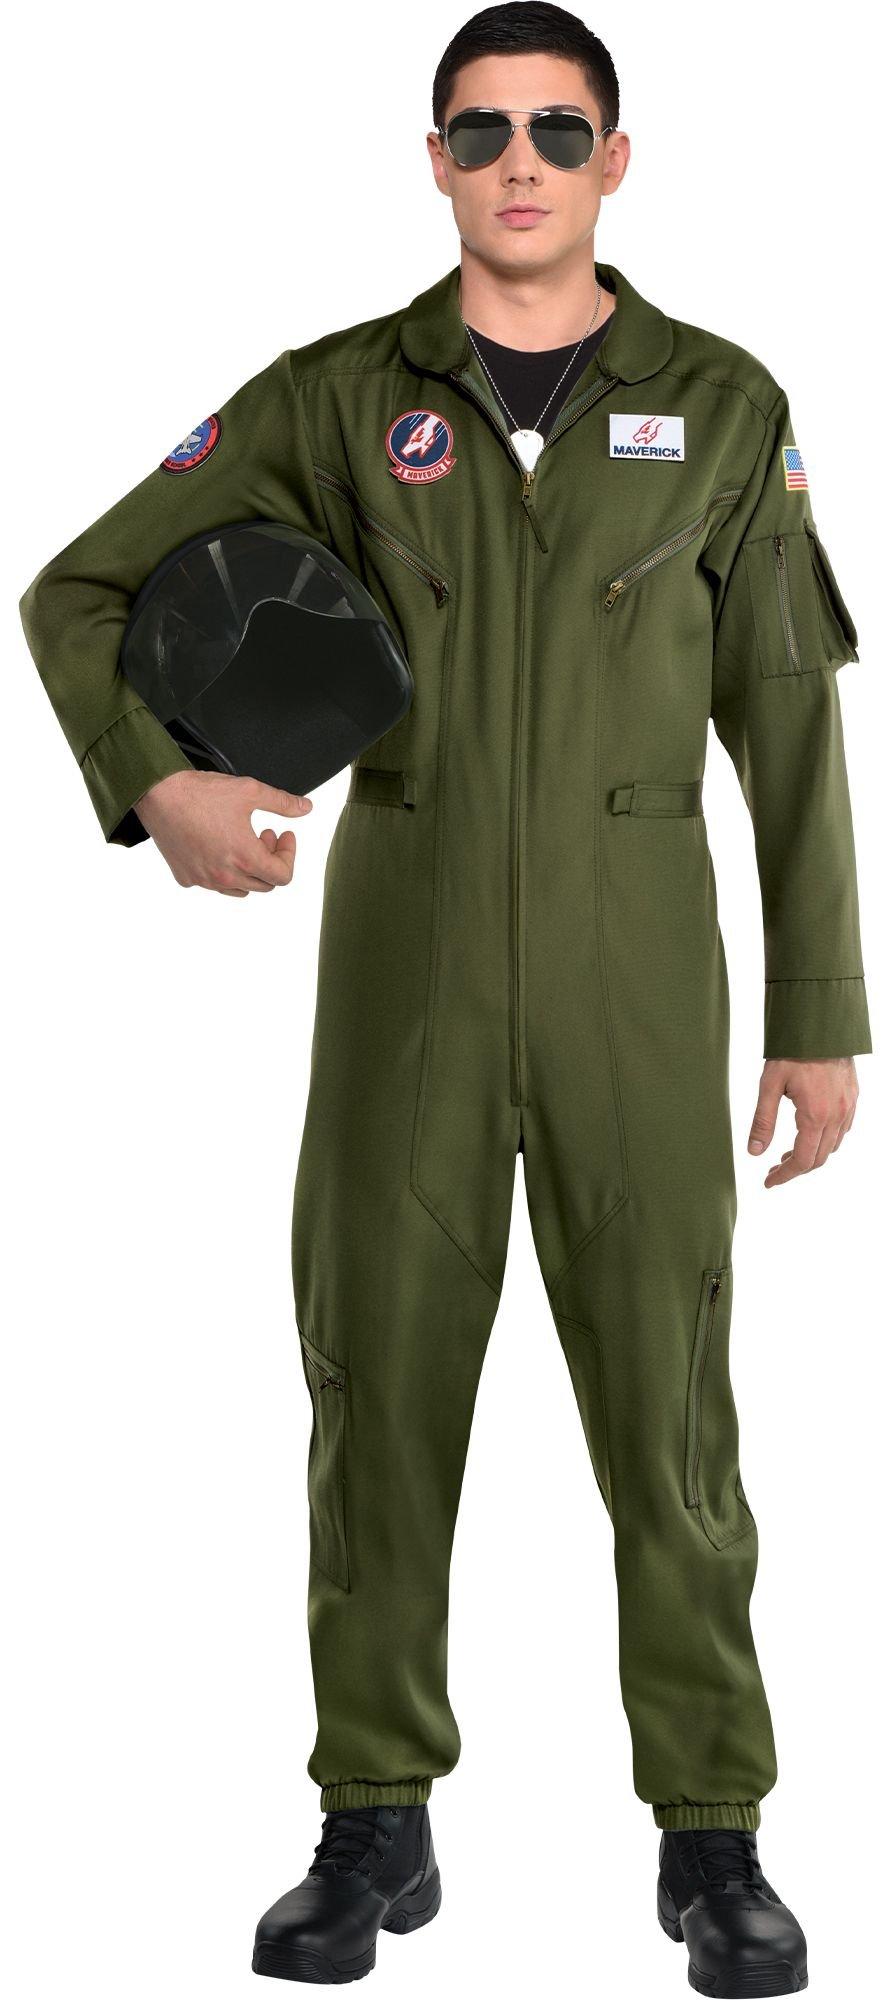 Maverick Flight Suit Costume for Men - Top Gun | Party City